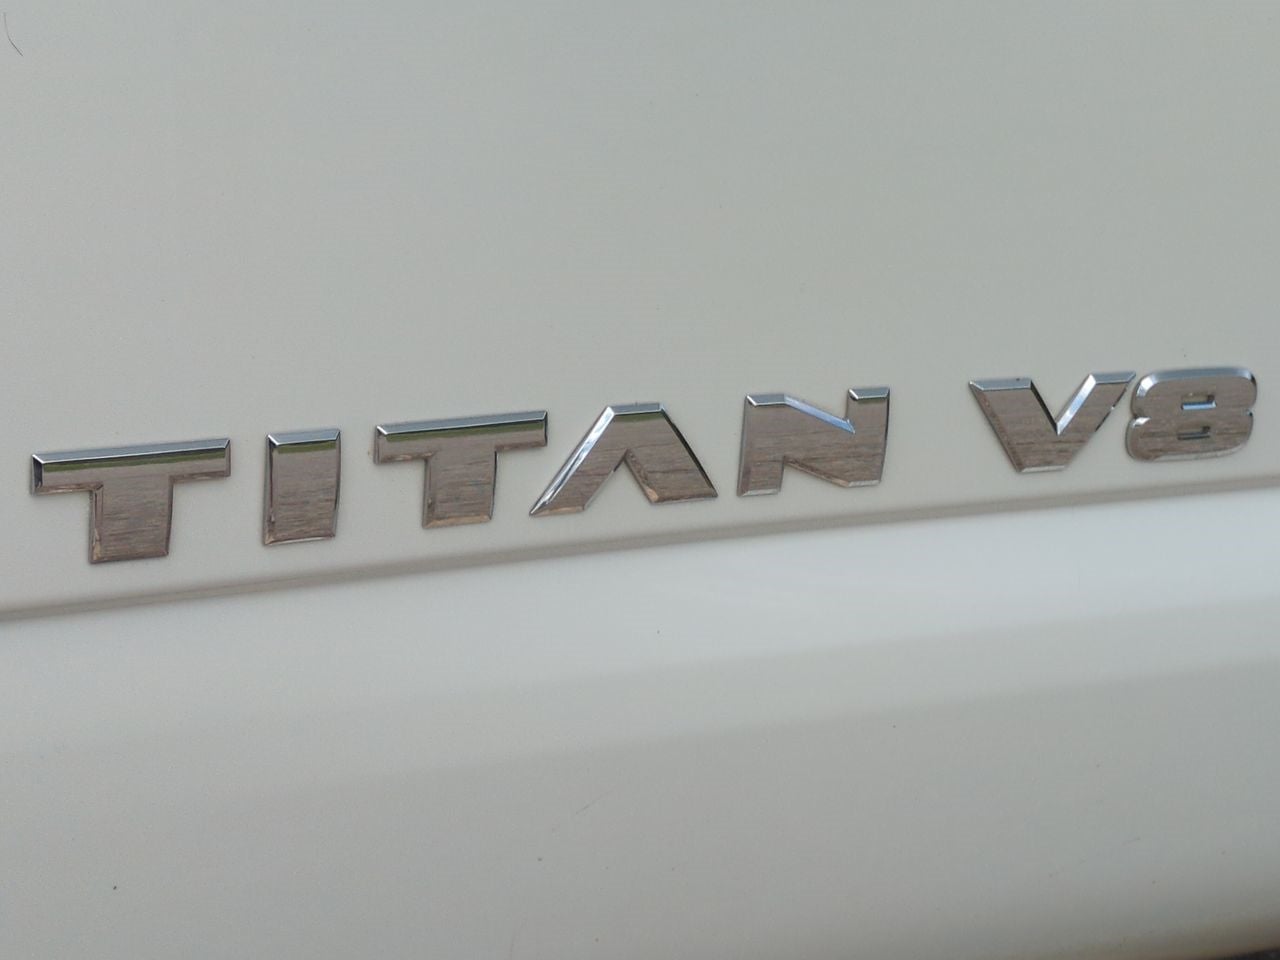 2018 Nissan TITAN PRO-4X